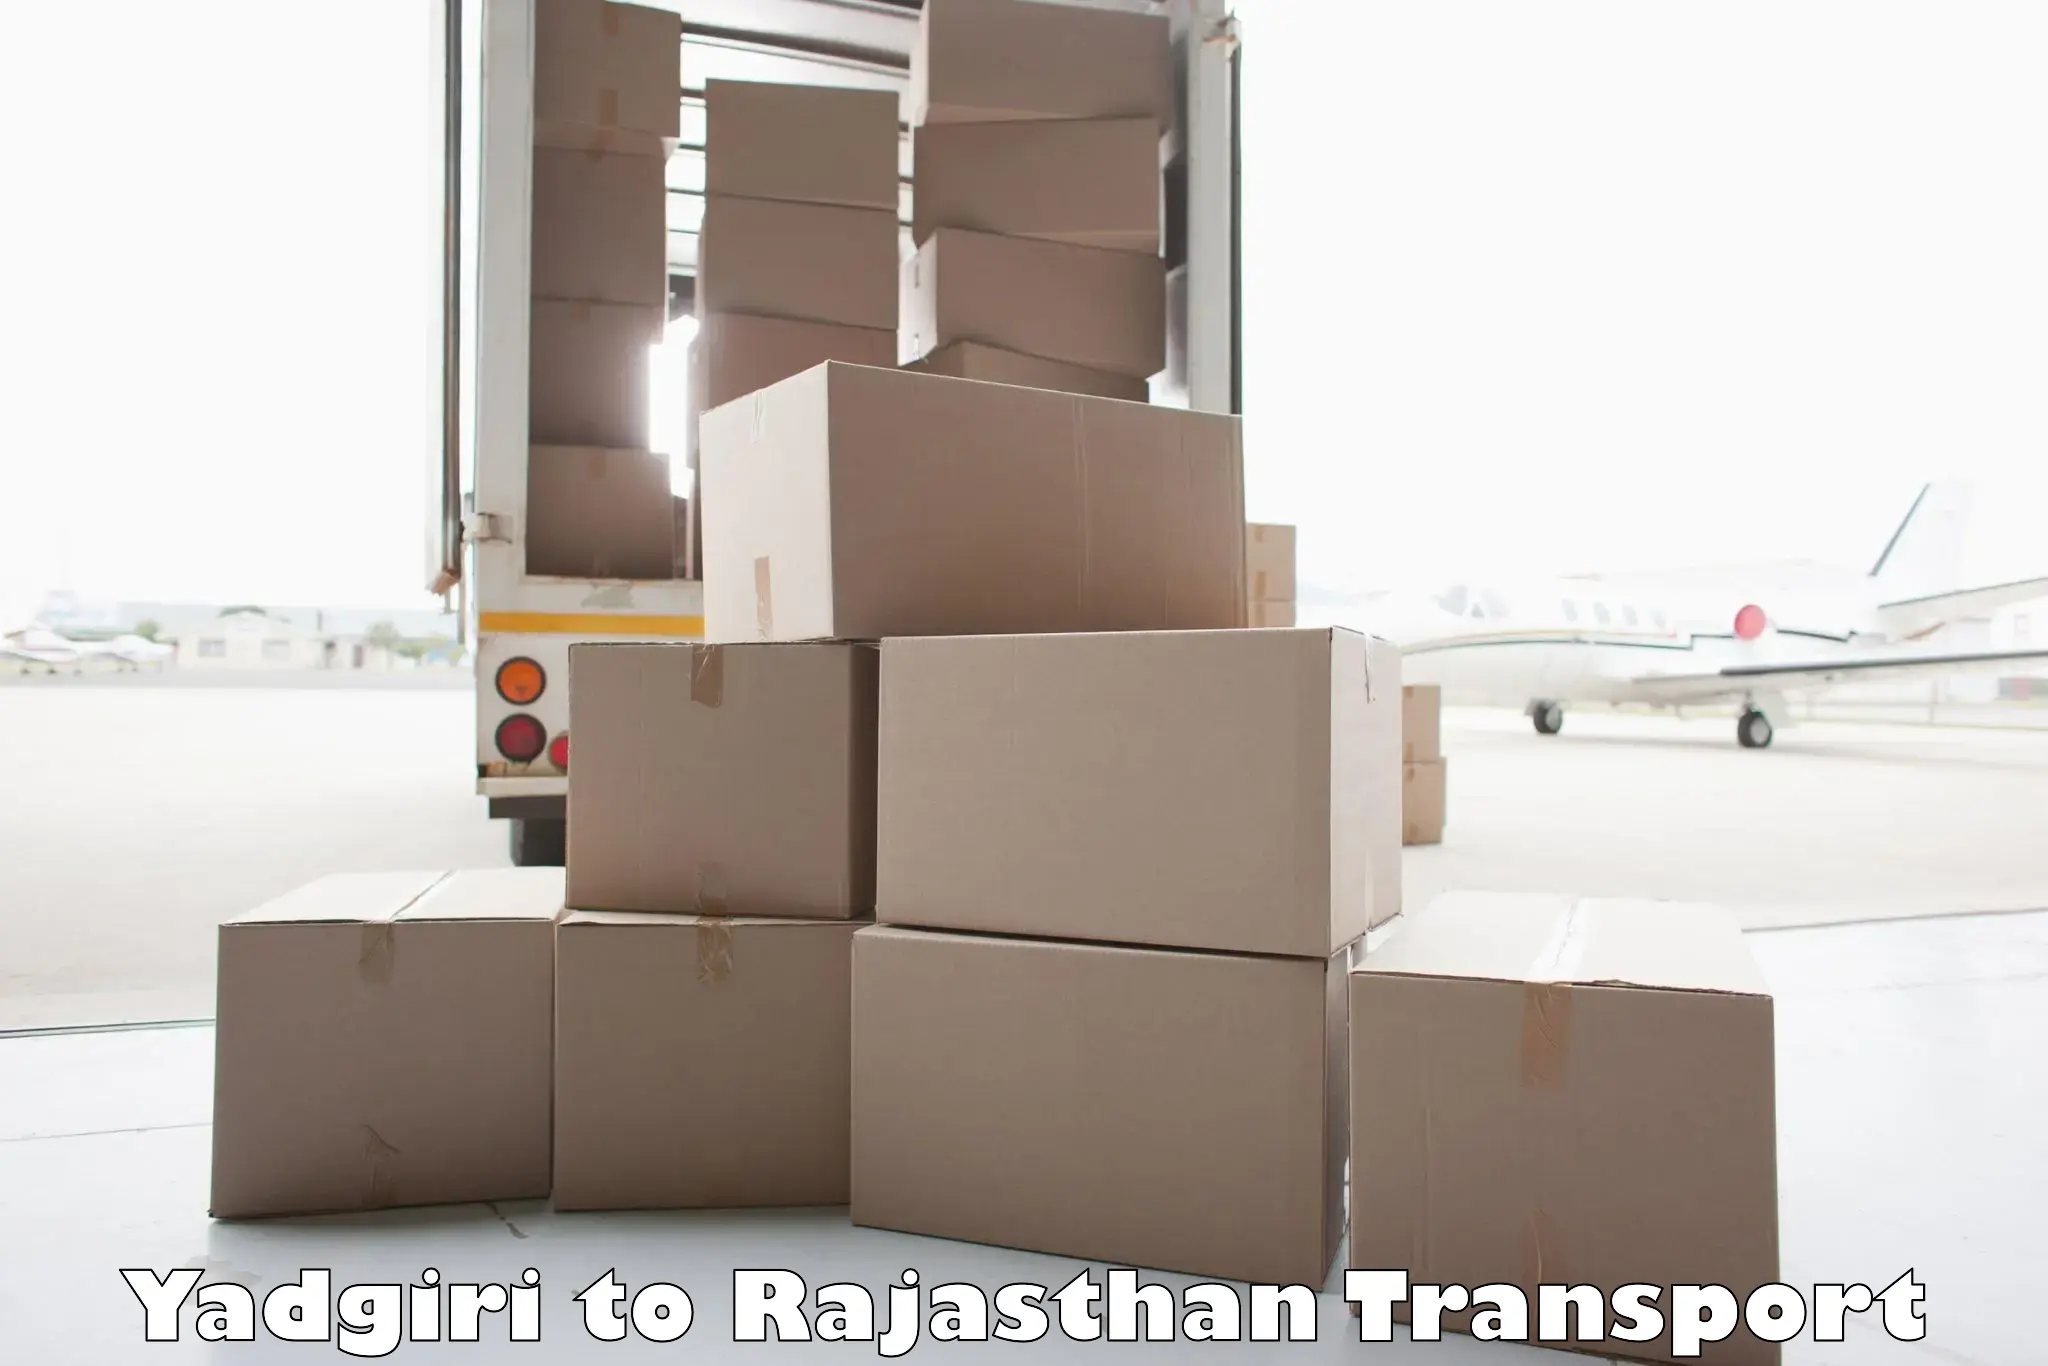 Vehicle transport services Yadgiri to Pratapgarh Rajasthan